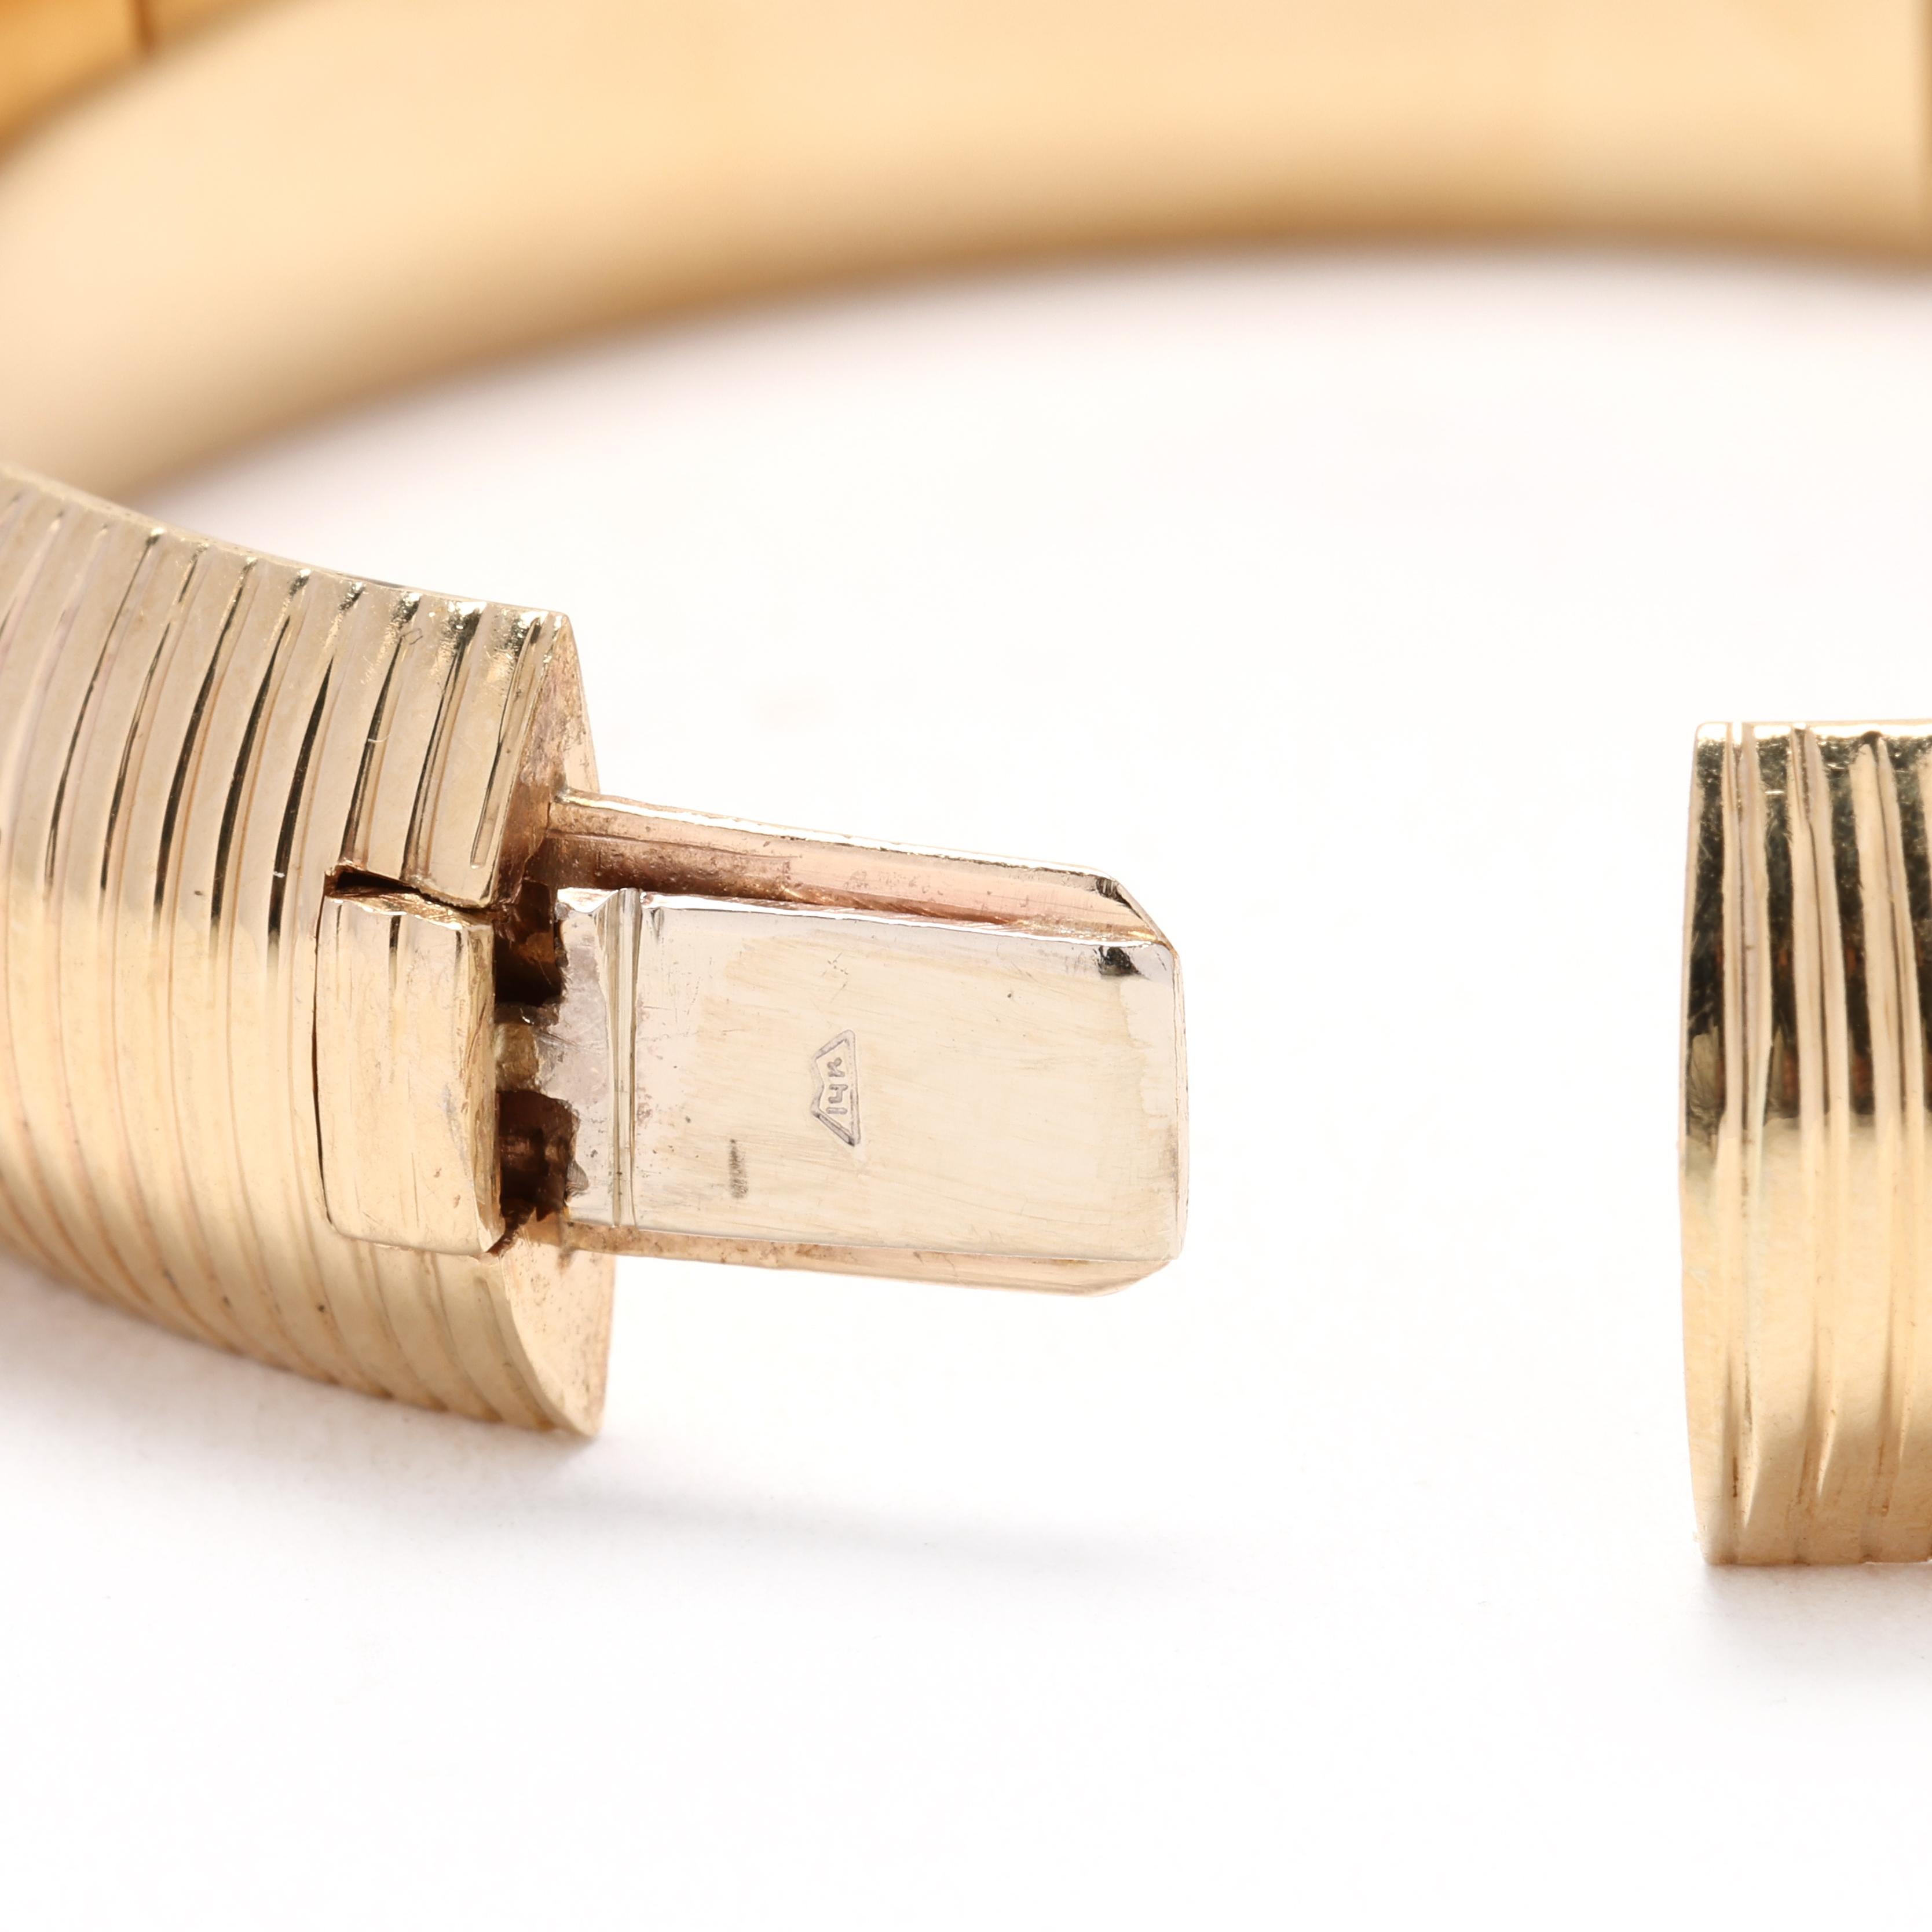 18k gold bangle bracelet for sale